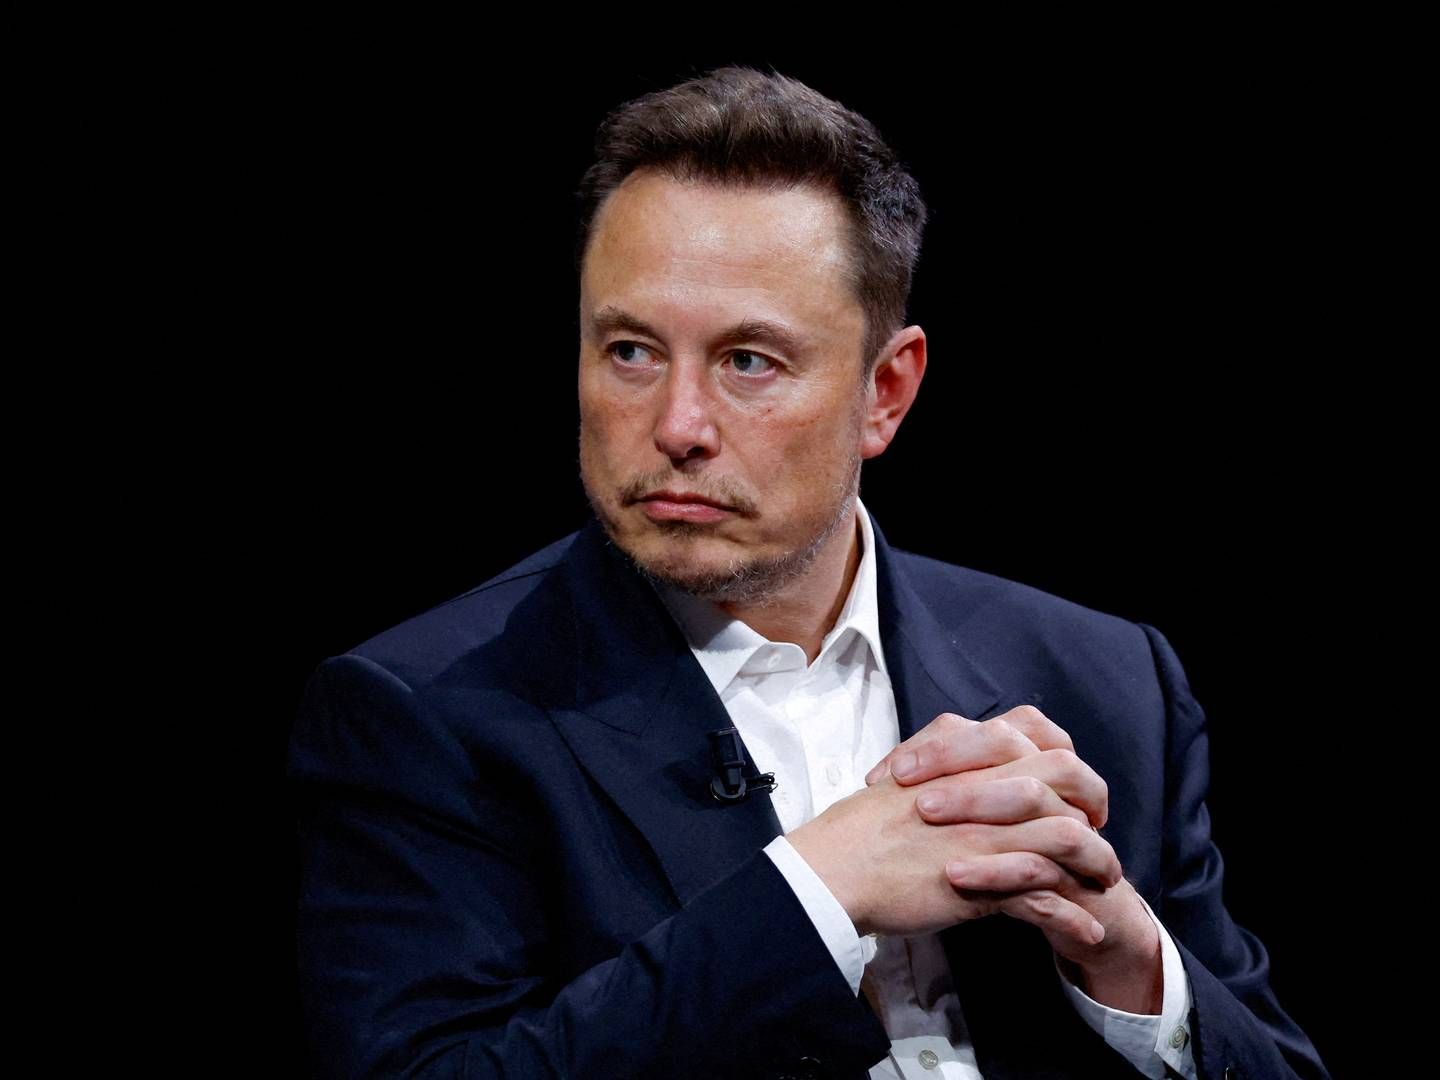 Elon Musk har givet udtryk for, at der er tale om et bevidst forsøg at skyde X i sænk med omtale af annoncører nær nazi-indhold. | Foto: Gonazlo Fuentes/Ritzau Scanpix